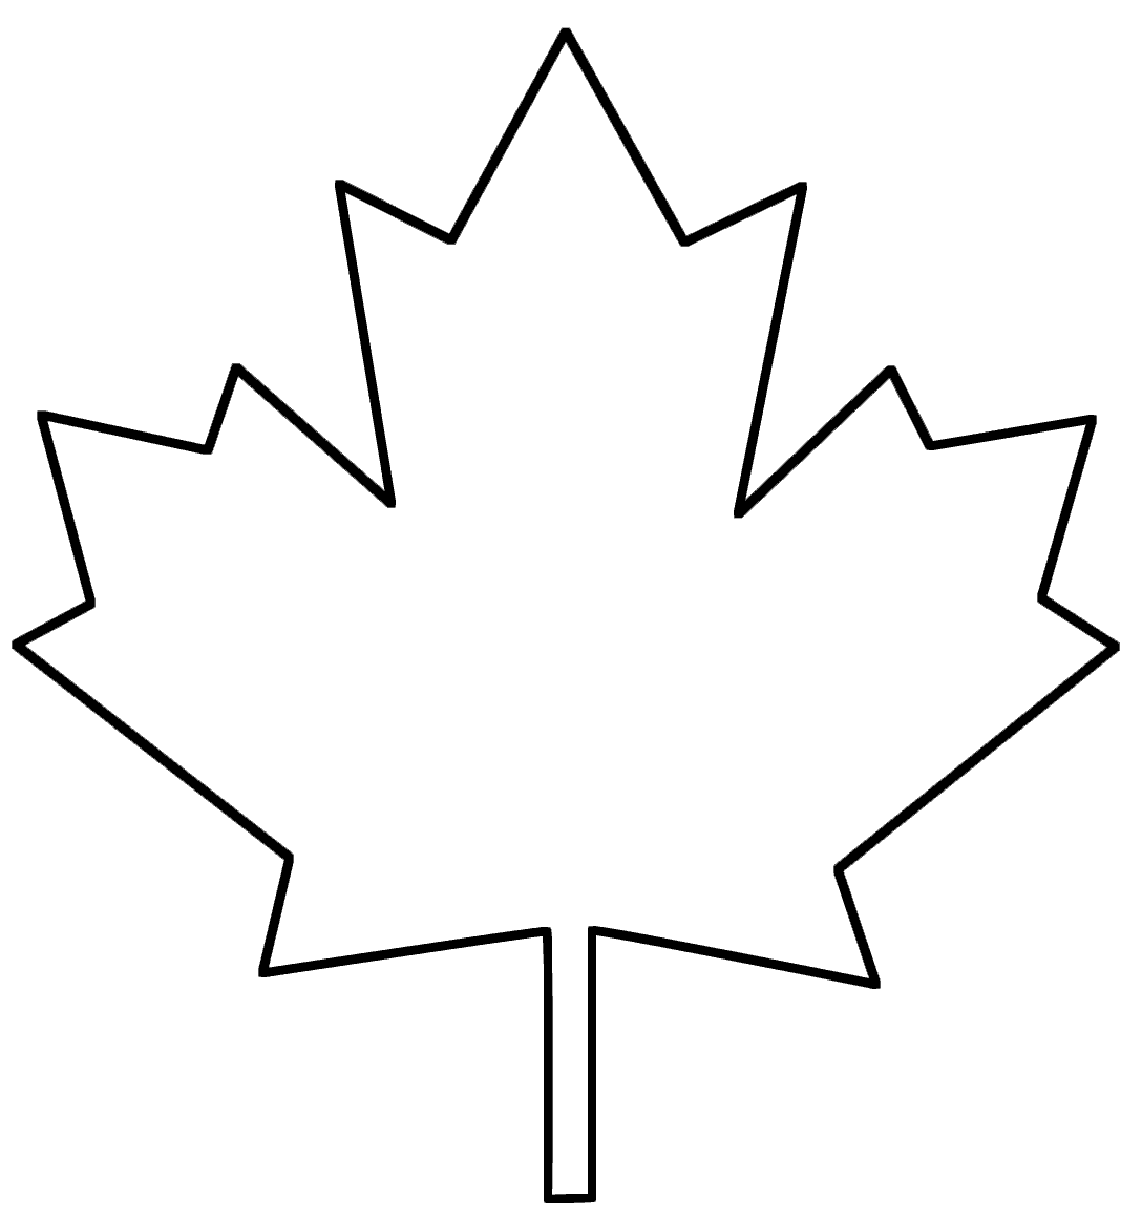 Maple Leaf sketching - SheetalColor.com